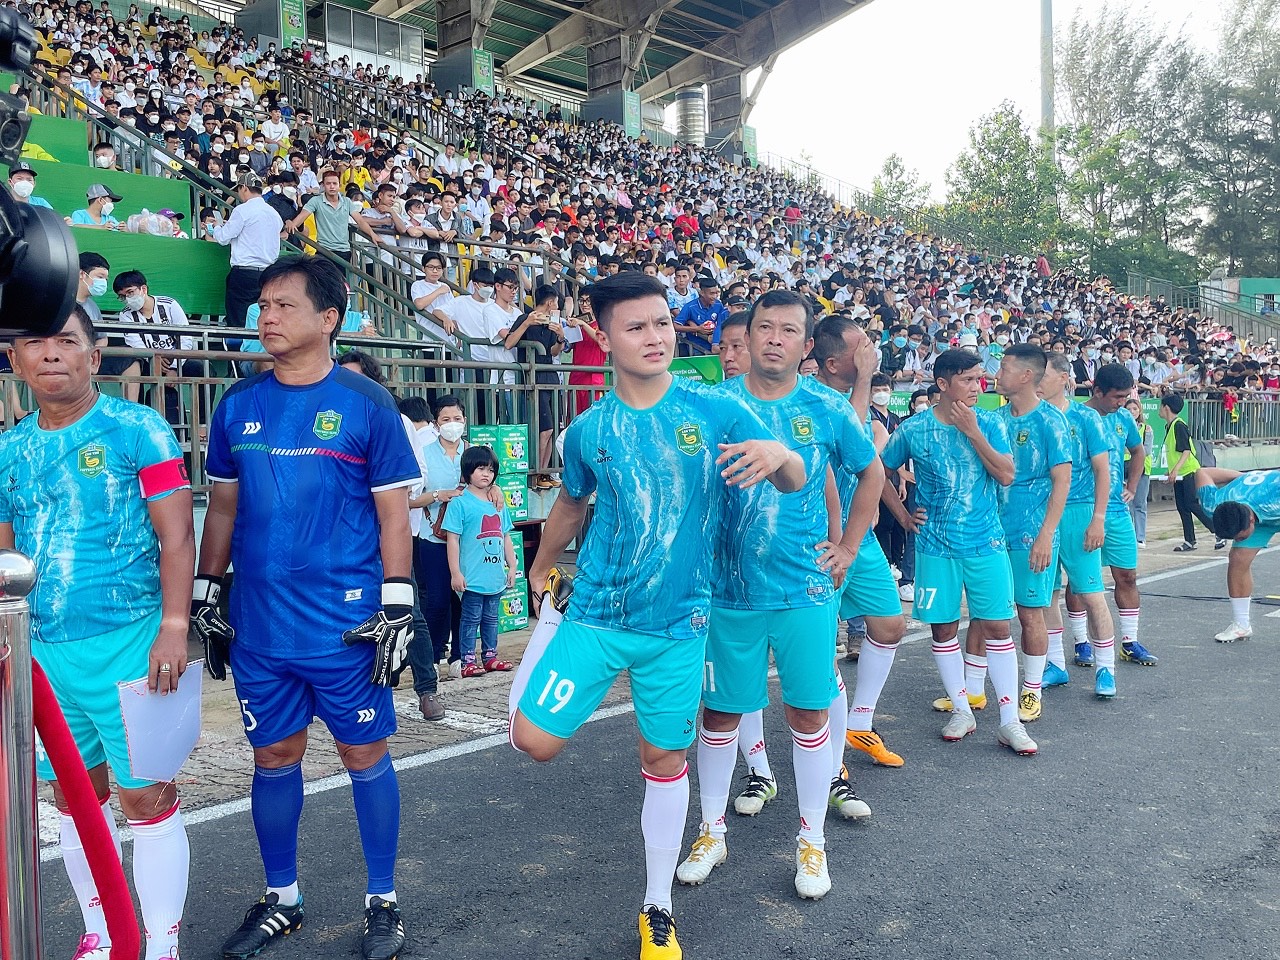 Với sự tham gia của tiền vệ Quang Hải, sân vận động Cần Thơ đã đón lượng khán giả trên 10.000 người. Khán đài A đã được phủ kín người hâm mộ